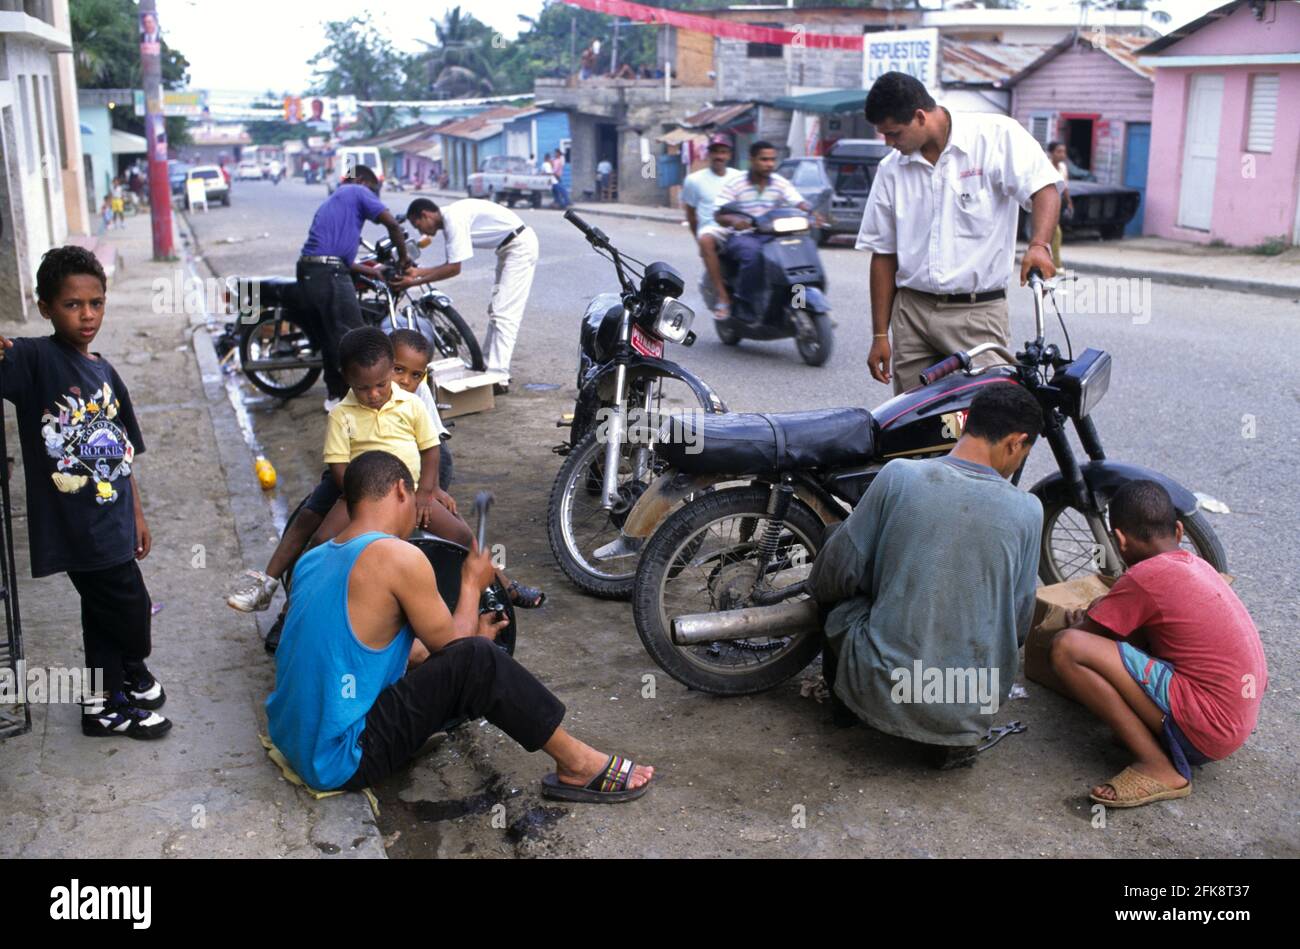 Dominikanische Republik, Straßenszene mit Motorrad- und Moped-Werkstatt am Straßenrand, in Puerto Plata Stock Photo